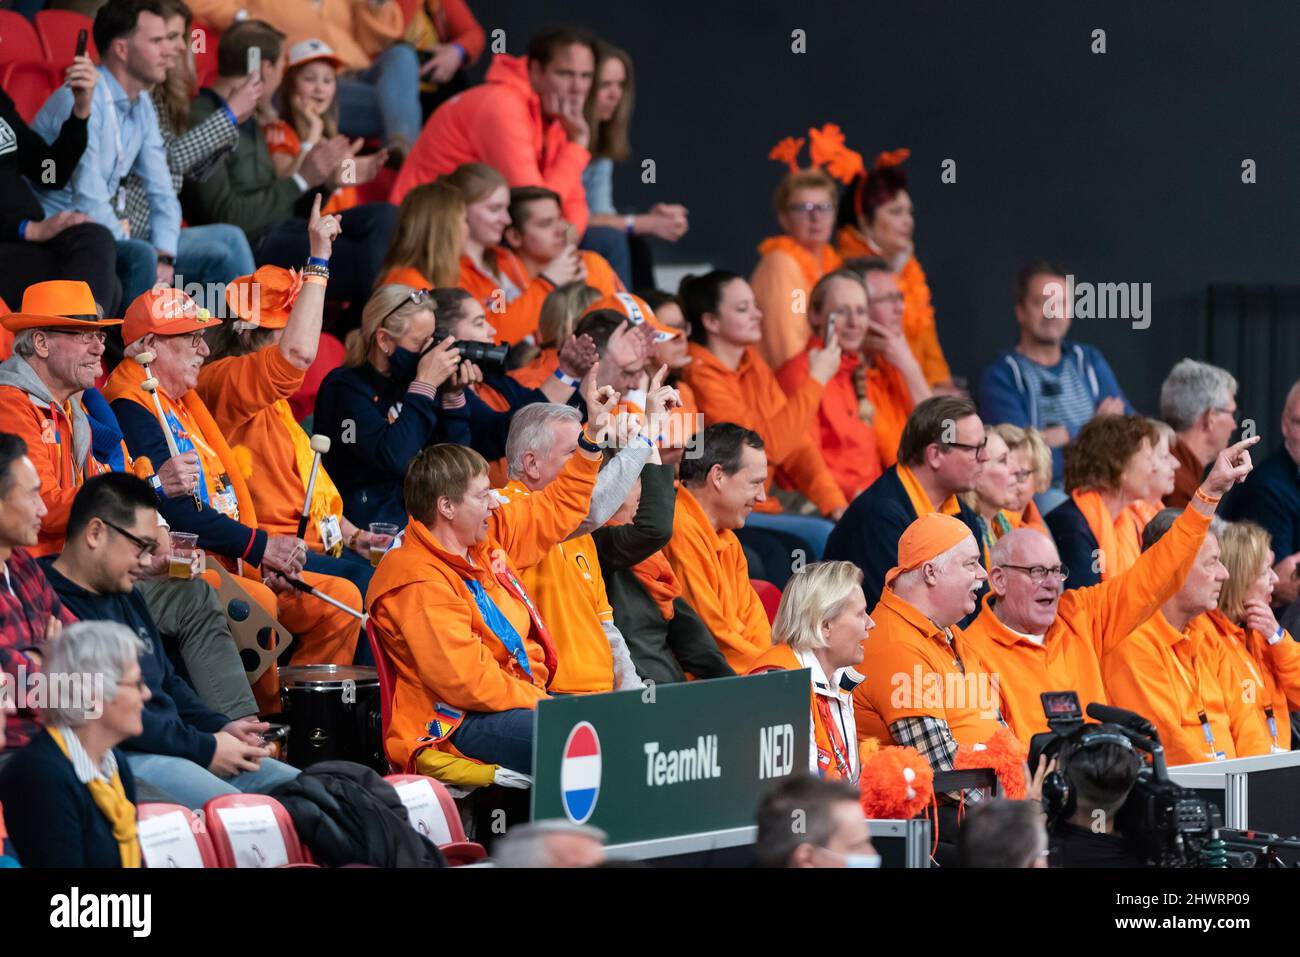 DEN HAAG, PAYS-BAS - MARS 5: Les supporters néerlandais lors de la qualification de la coupe Davis 2022 entre les pays-Bas et le Canada au Sportcampus Zuiderpark le 5 mars 2022 à Den Haag, pays-Bas (photo de Rob Sebel/Orange Pictures) Banque D'Images